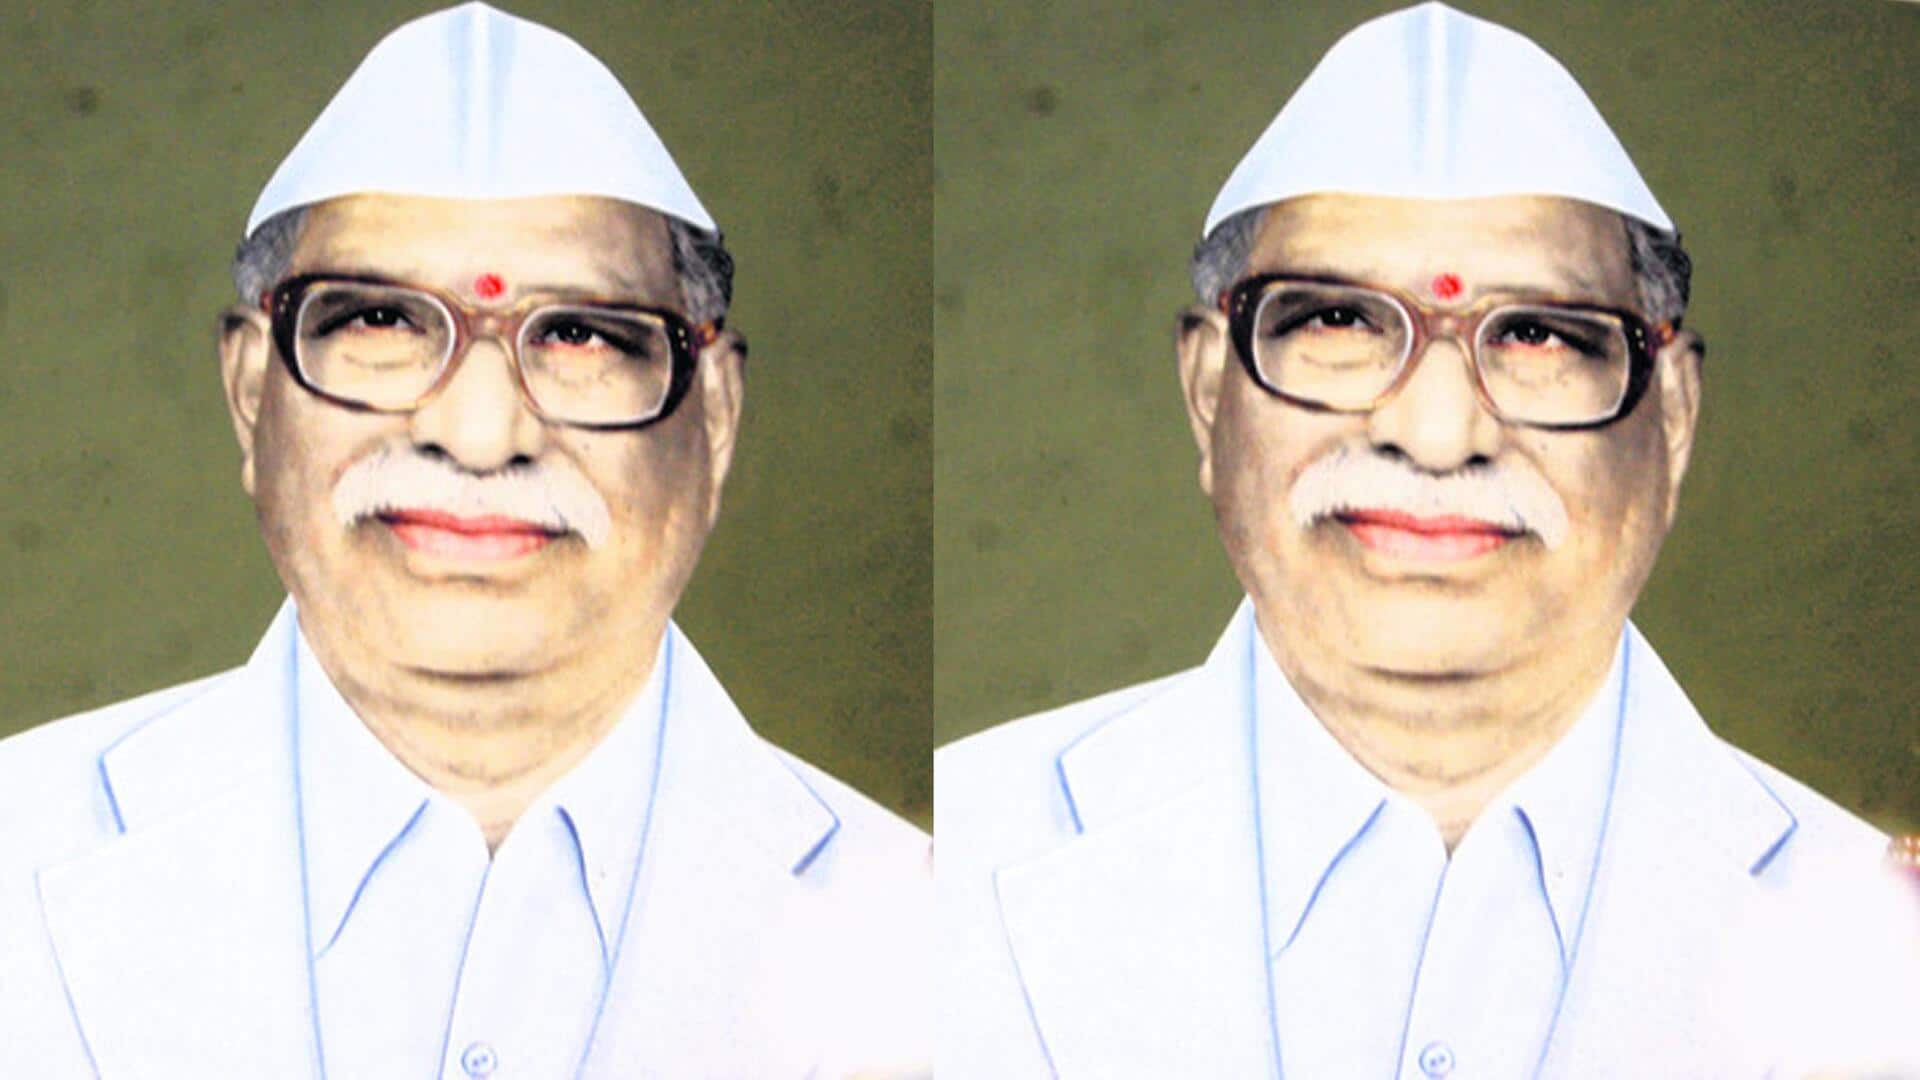 Telangana elections: 6 సార్ల ఎమ్మెల్యే గడ్డిగారి గడ్డెన్న తెలుసా, ఎన్నికల్లో ఓటేస్తూనే తుదిశ్వాస విడిచారు